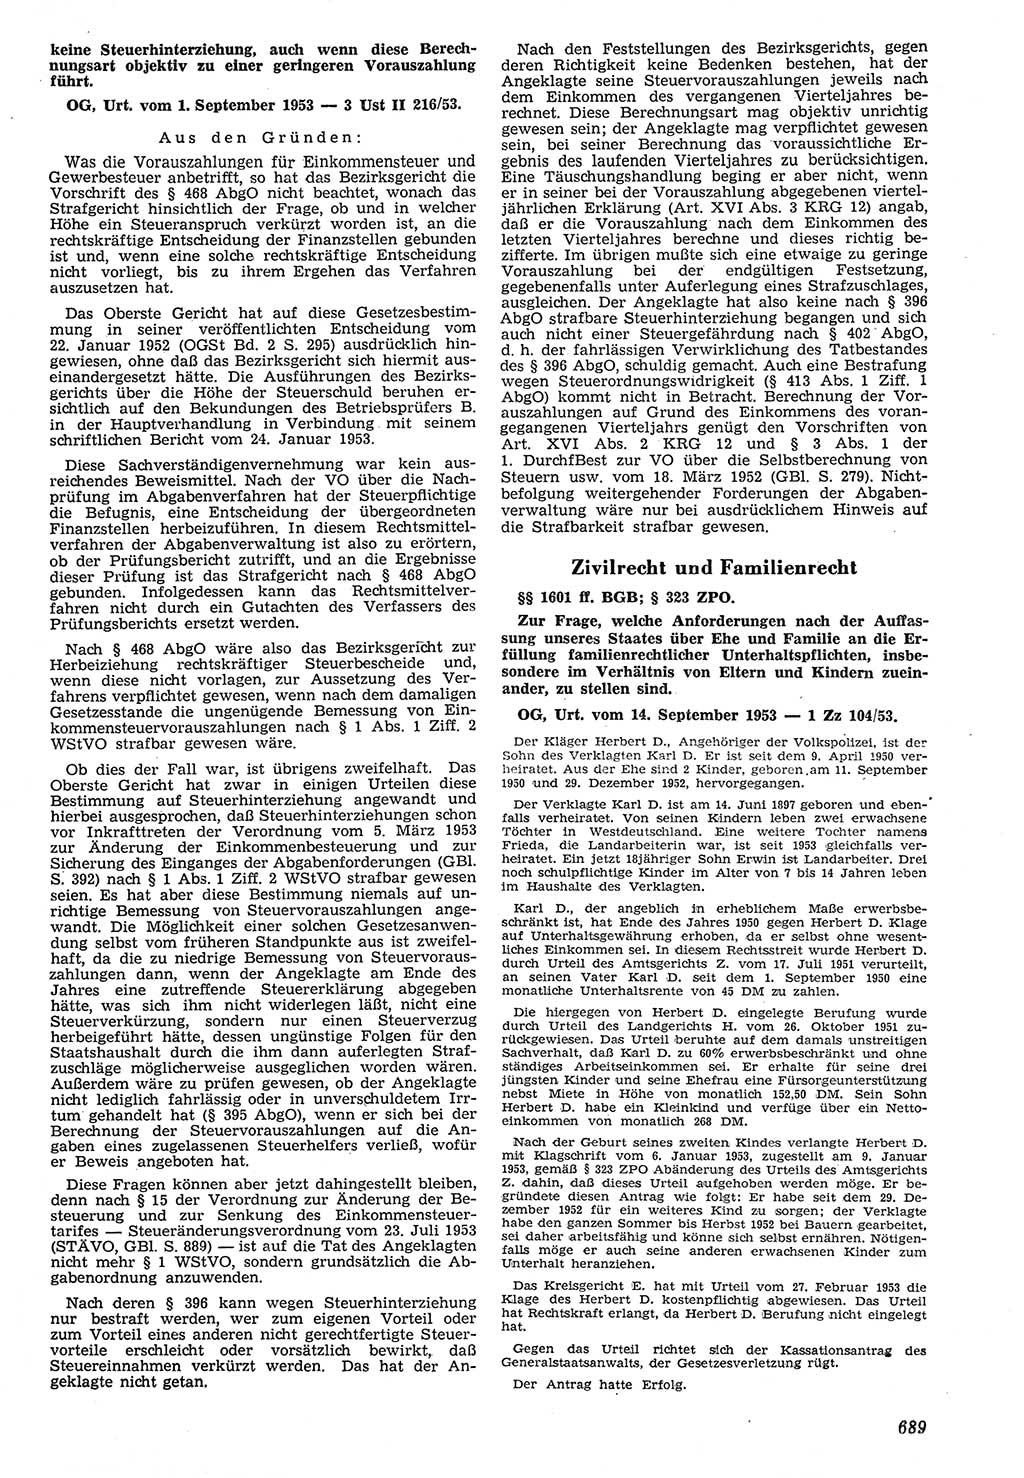 Neue Justiz (NJ), Zeitschrift für Recht und Rechtswissenschaft [Deutsche Demokratische Republik (DDR)], 7. Jahrgang 1953, Seite 689 (NJ DDR 1953, S. 689)